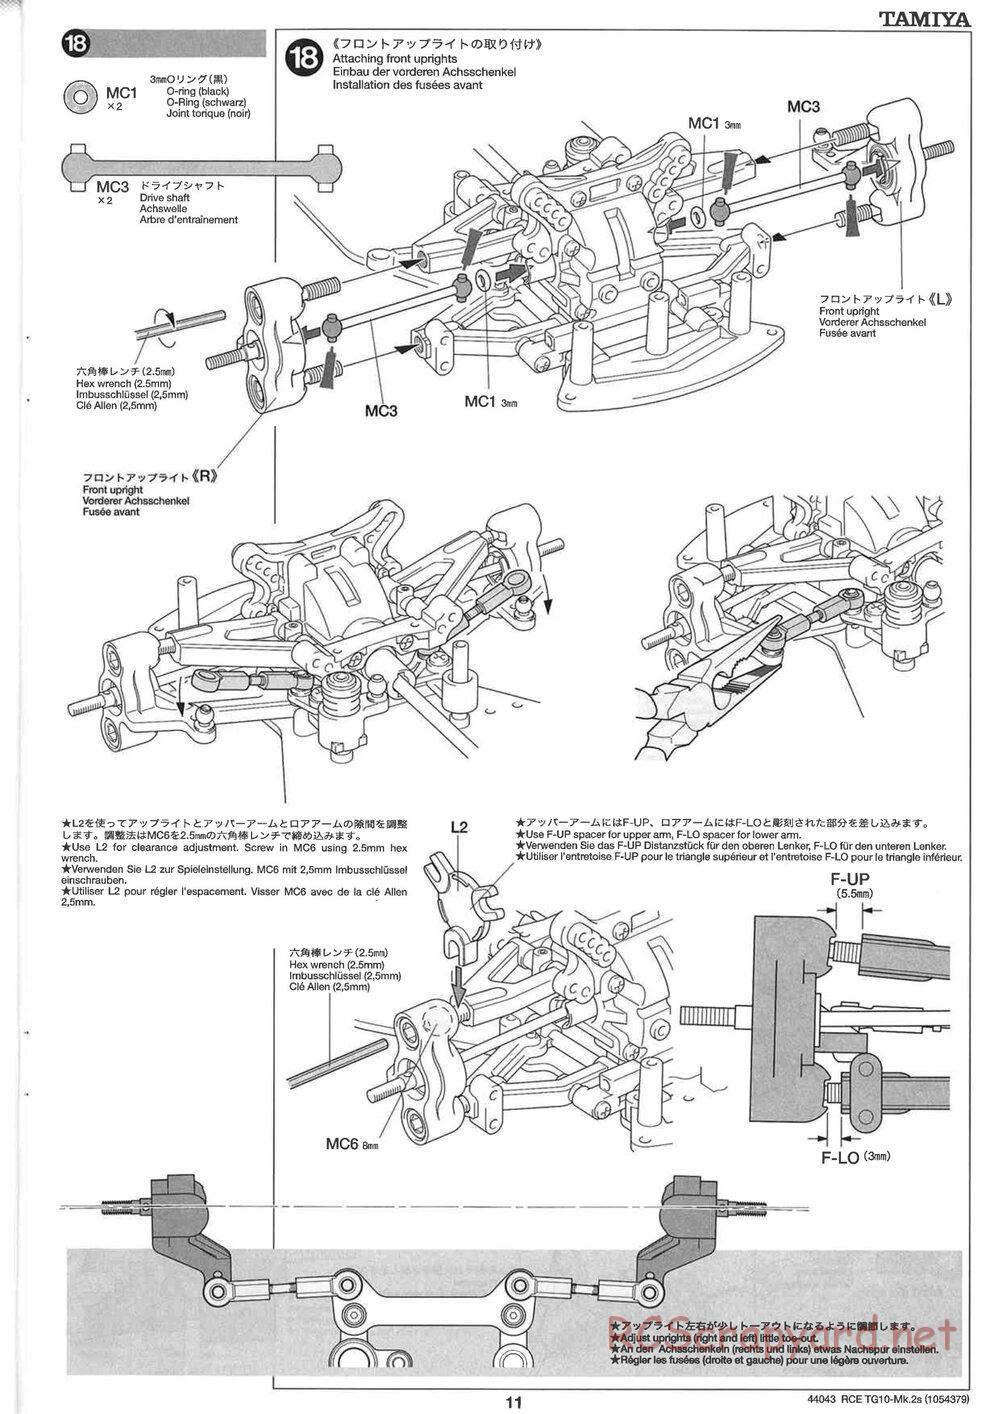 Tamiya - TG10 Mk.2s Chassis - Manual - Page 12